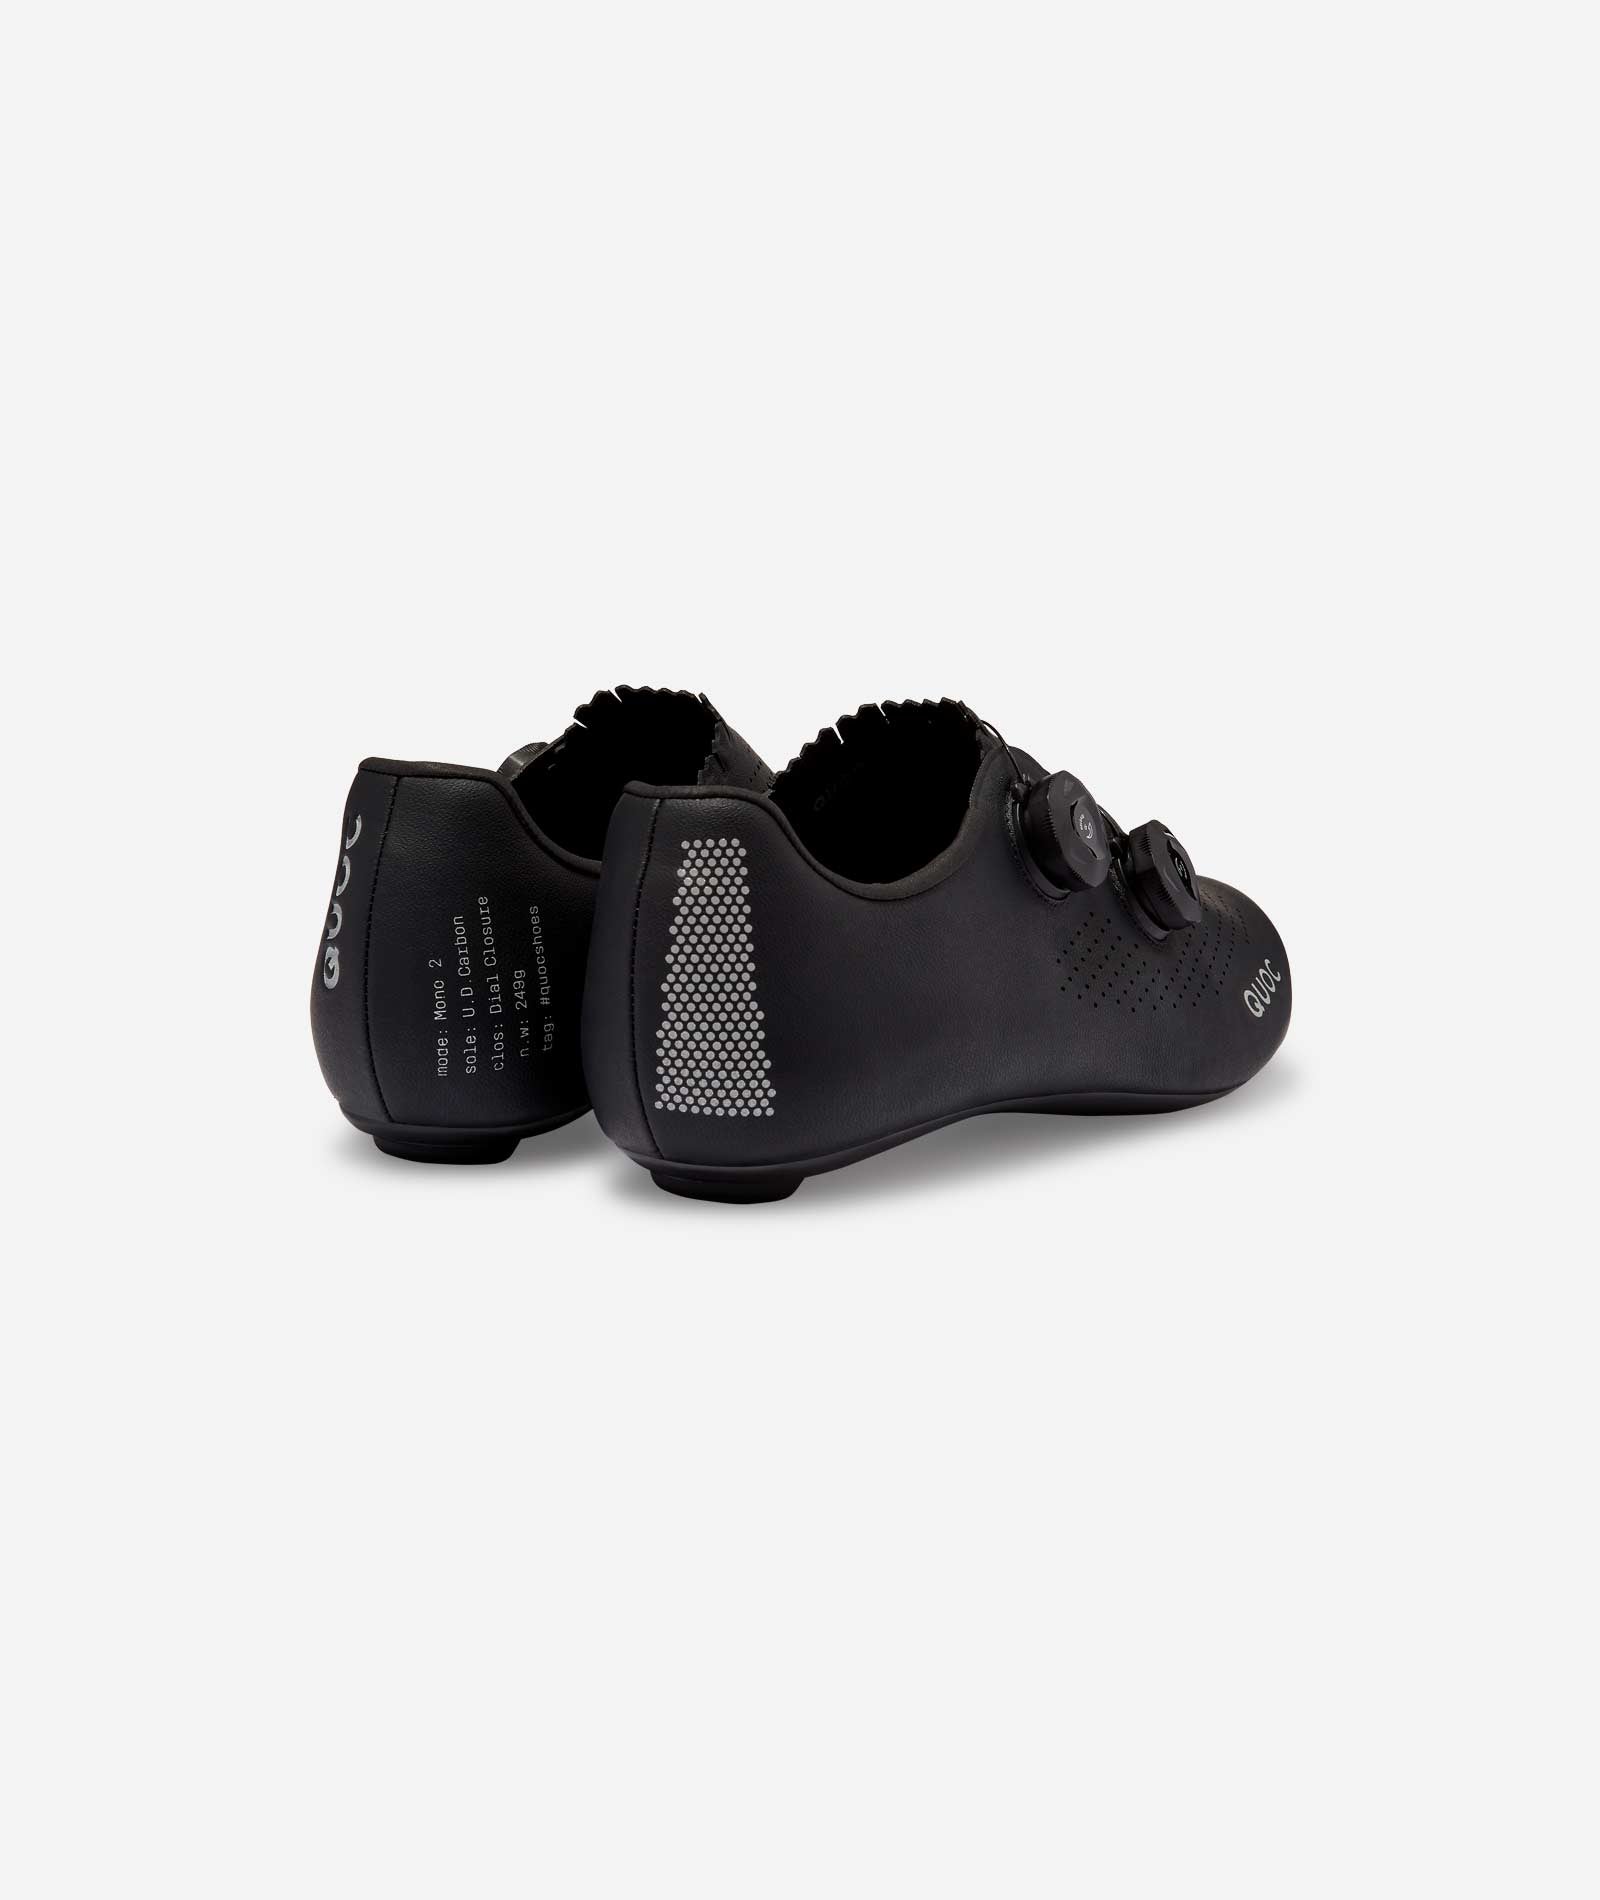 Mono II Road Shoes - Black